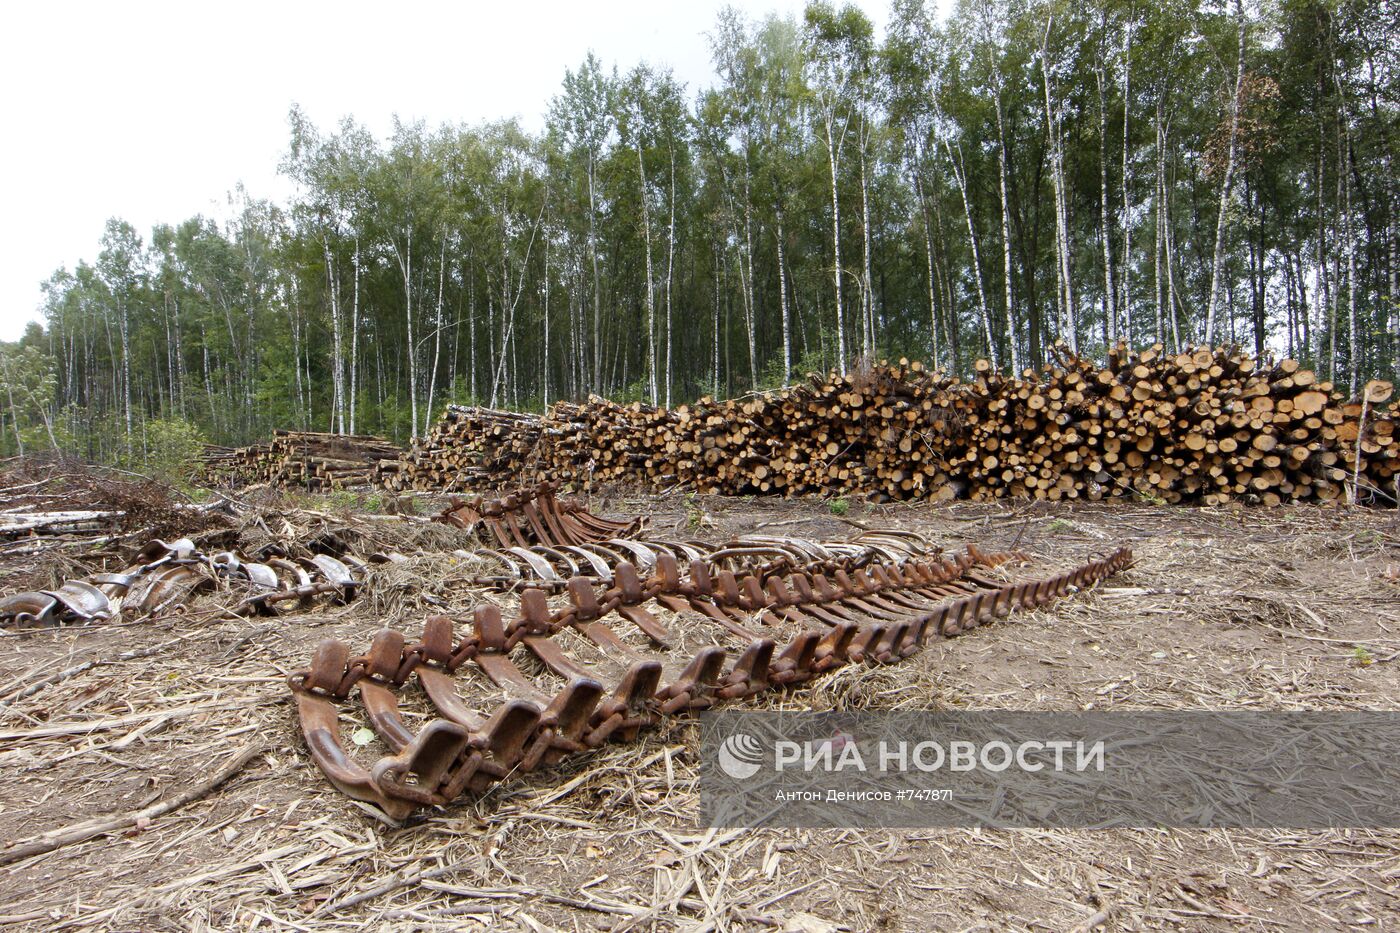 Строительство автодороги через Химкинский лес приостановлено